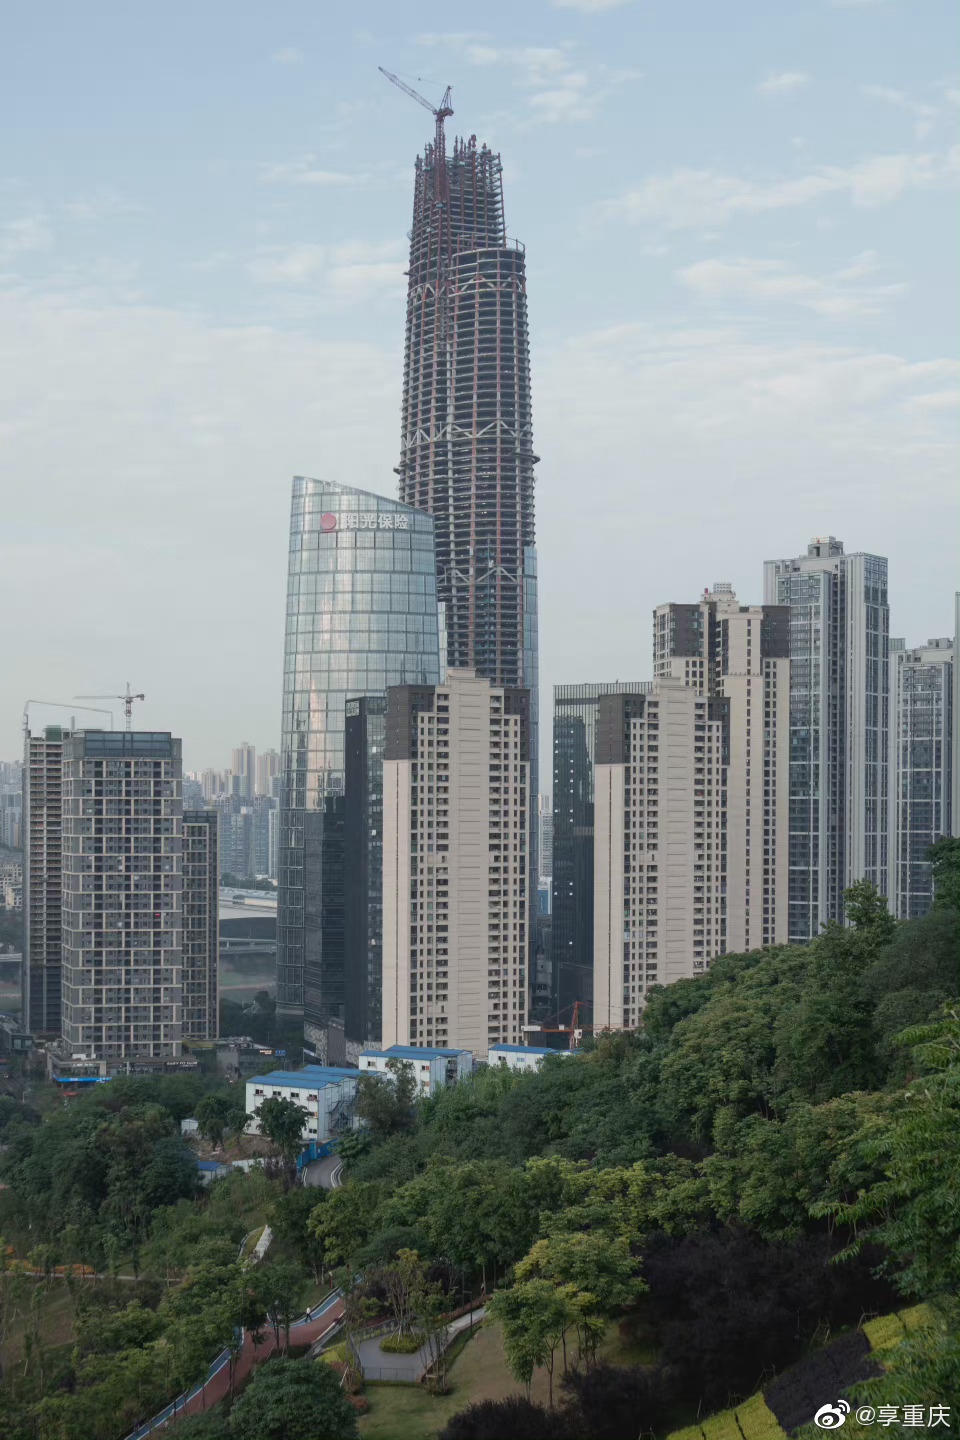 (图/重庆ckg 67截至目前为止,重庆第一高楼陆海国际中心已施工至